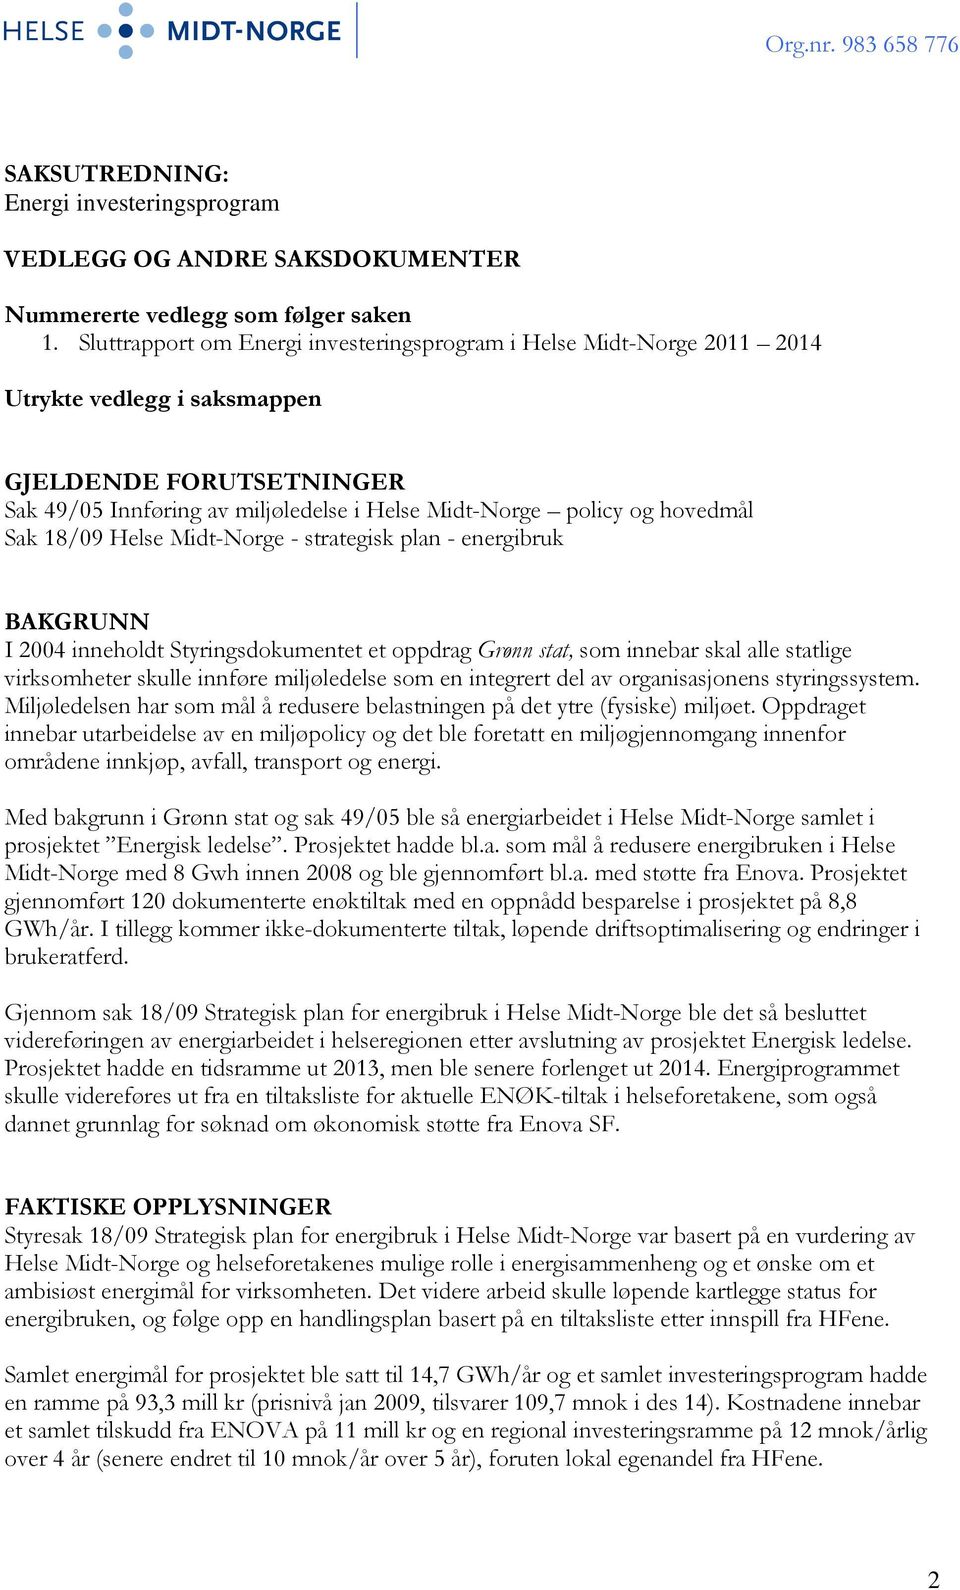 Sak 18/09 Helse Midt-Norge - strategisk plan - energibruk BAKGRUNN I 2004 inneholdt Styringsdokumentet et oppdrag Grønn stat, som innebar skal alle statlige virksomheter skulle innføre miljøledelse